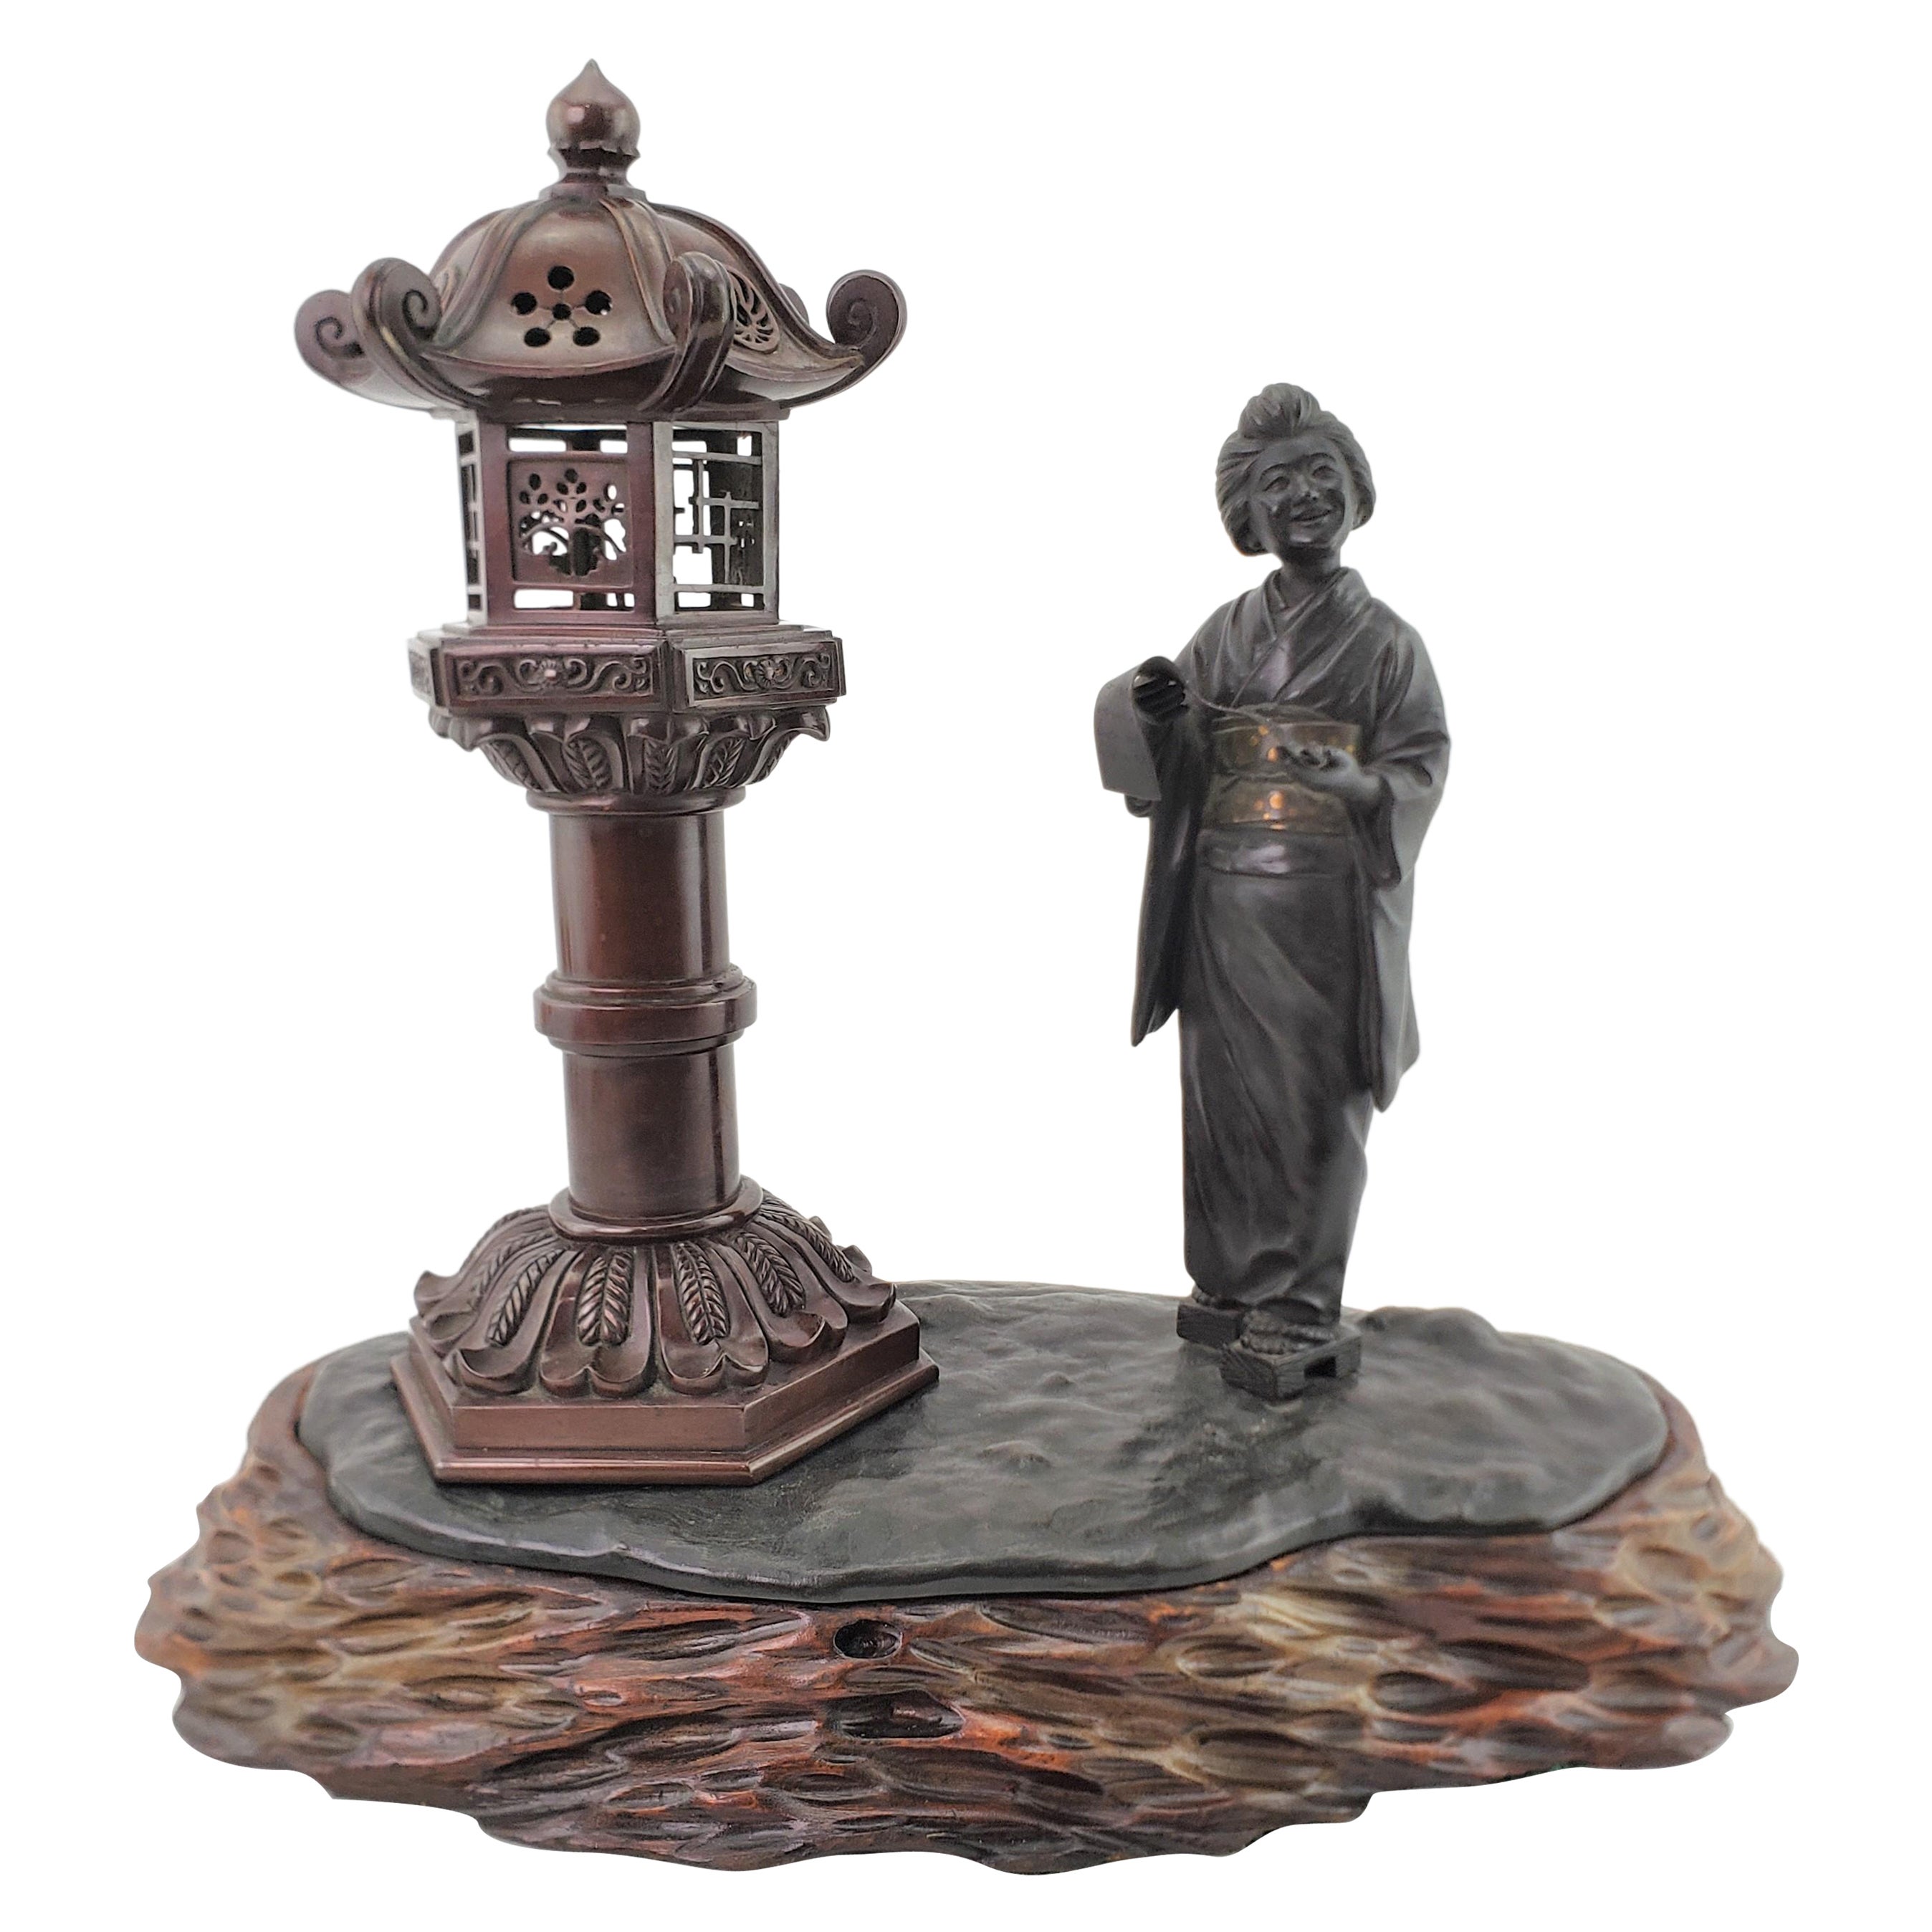 Brûleur d'encens ancien japonais figuratif représentant une femme et une lanterne, signé Meiji, avec base